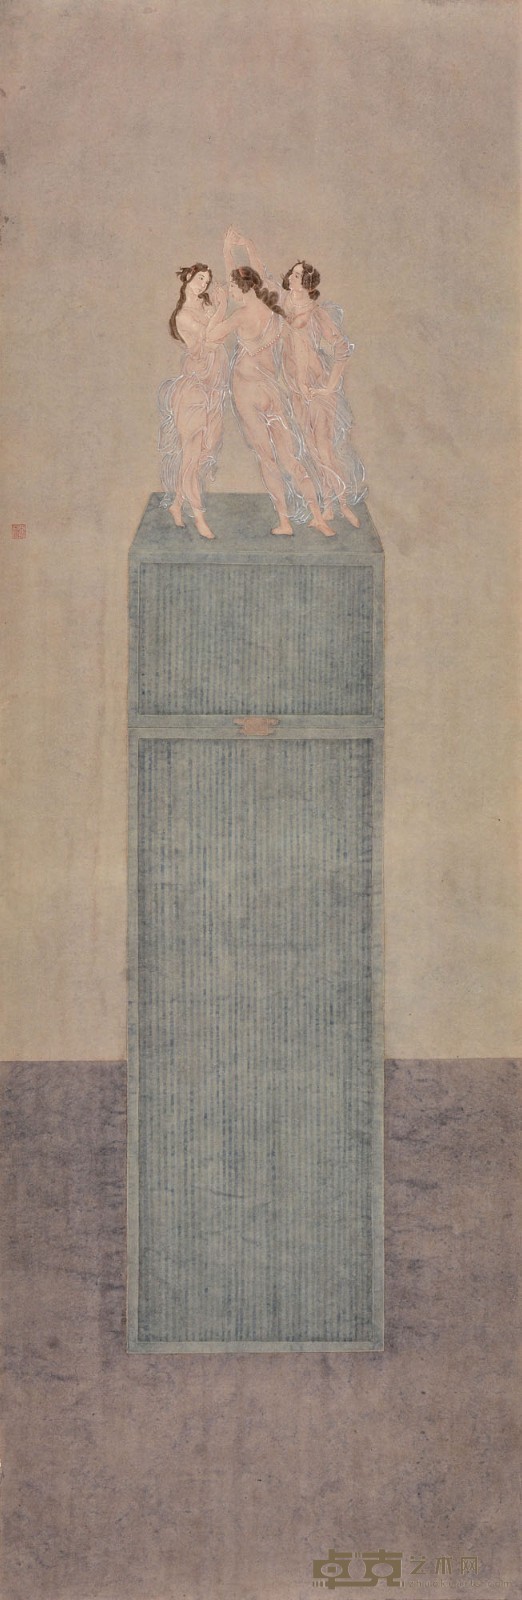 杜亚璇   触·春之一   纸本设色   45.6厘米乘138.8厘米   .jpg